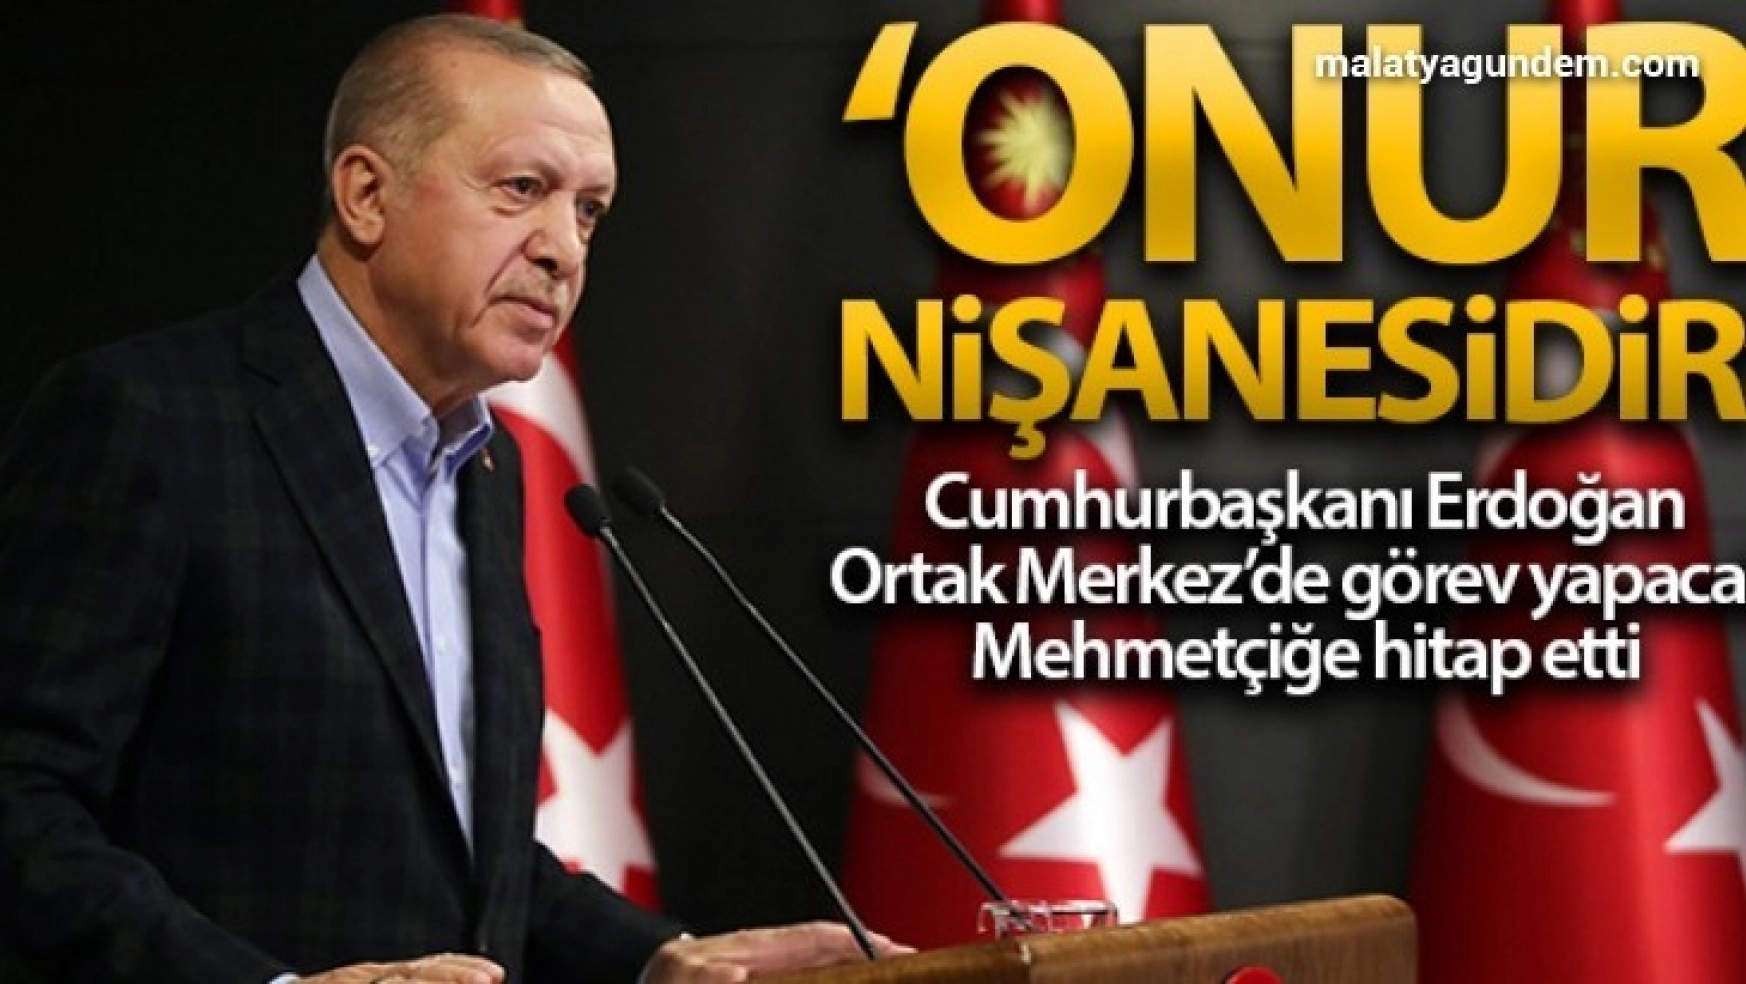 Cumhurbaşkanı Erdoğan, Ortak Merkez'de görev yapmak üzere Bakü'de bulanan Mehmetçiğe hitap etti